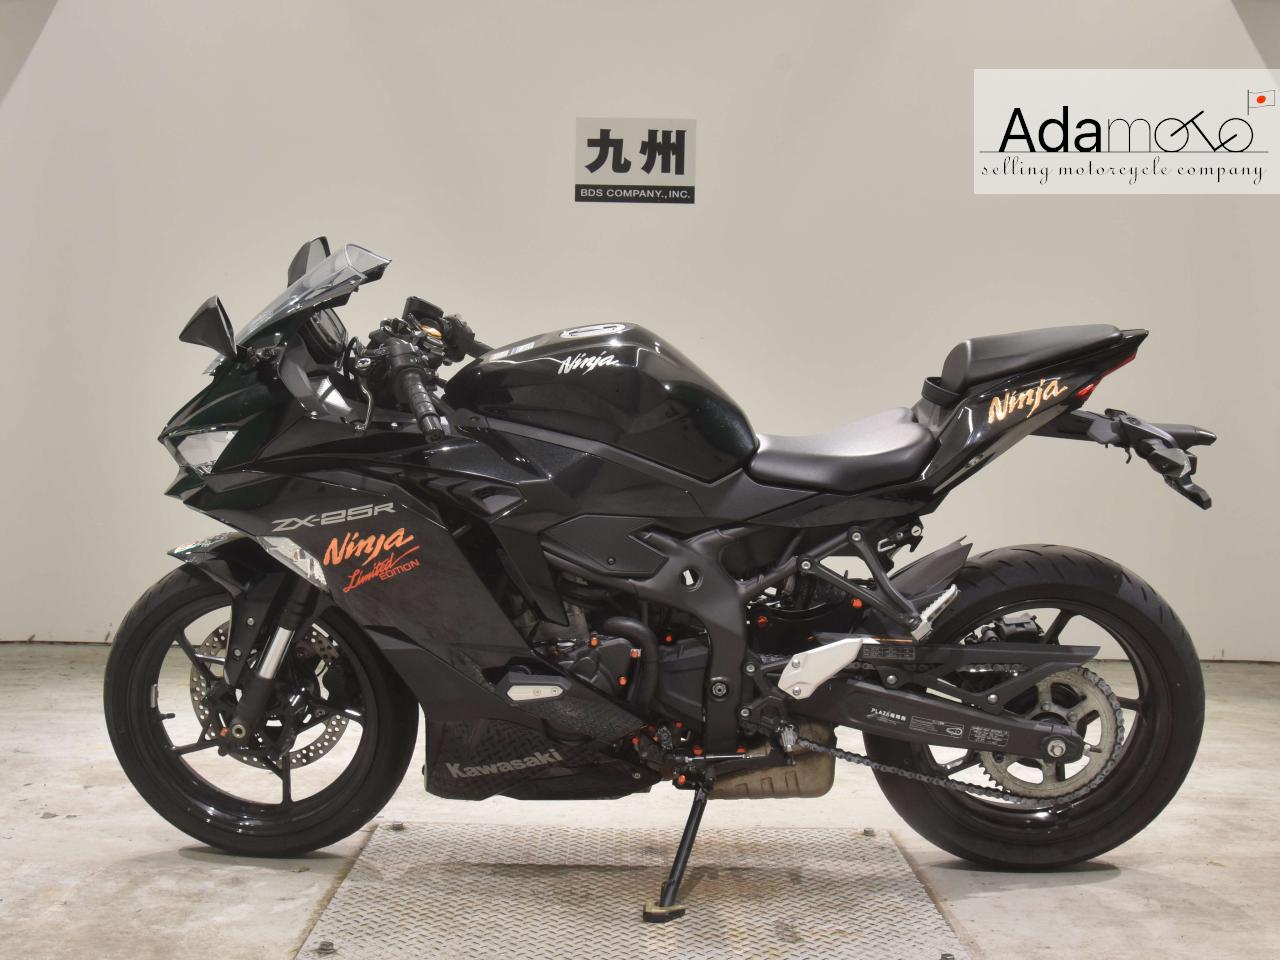 Kawasaki ZX 25R - Adamoto - Motorcycles from Japan